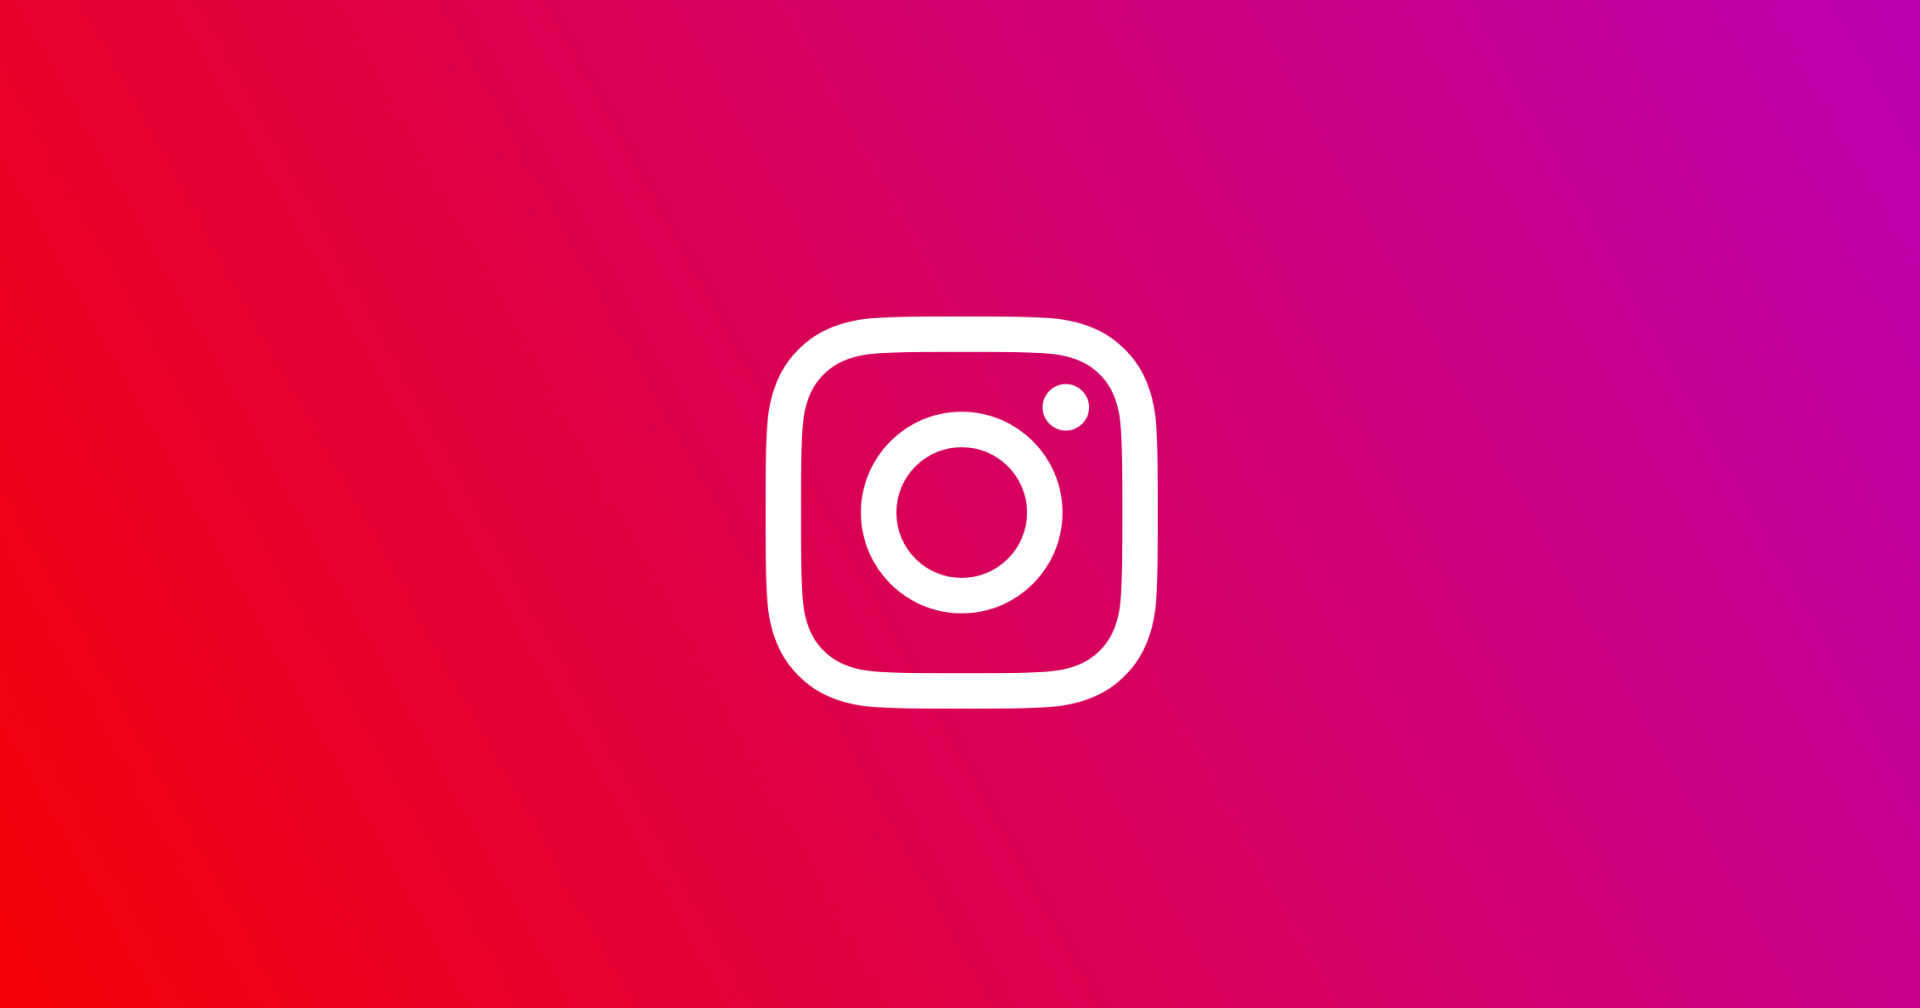 ถูกใจสายคุมโทน!! Instagram พัฒนาฟีเจอร์ให้ผู้ใช้จัดตำแหน่งรูปในโปรไฟล์ได้ง่าย ๆ